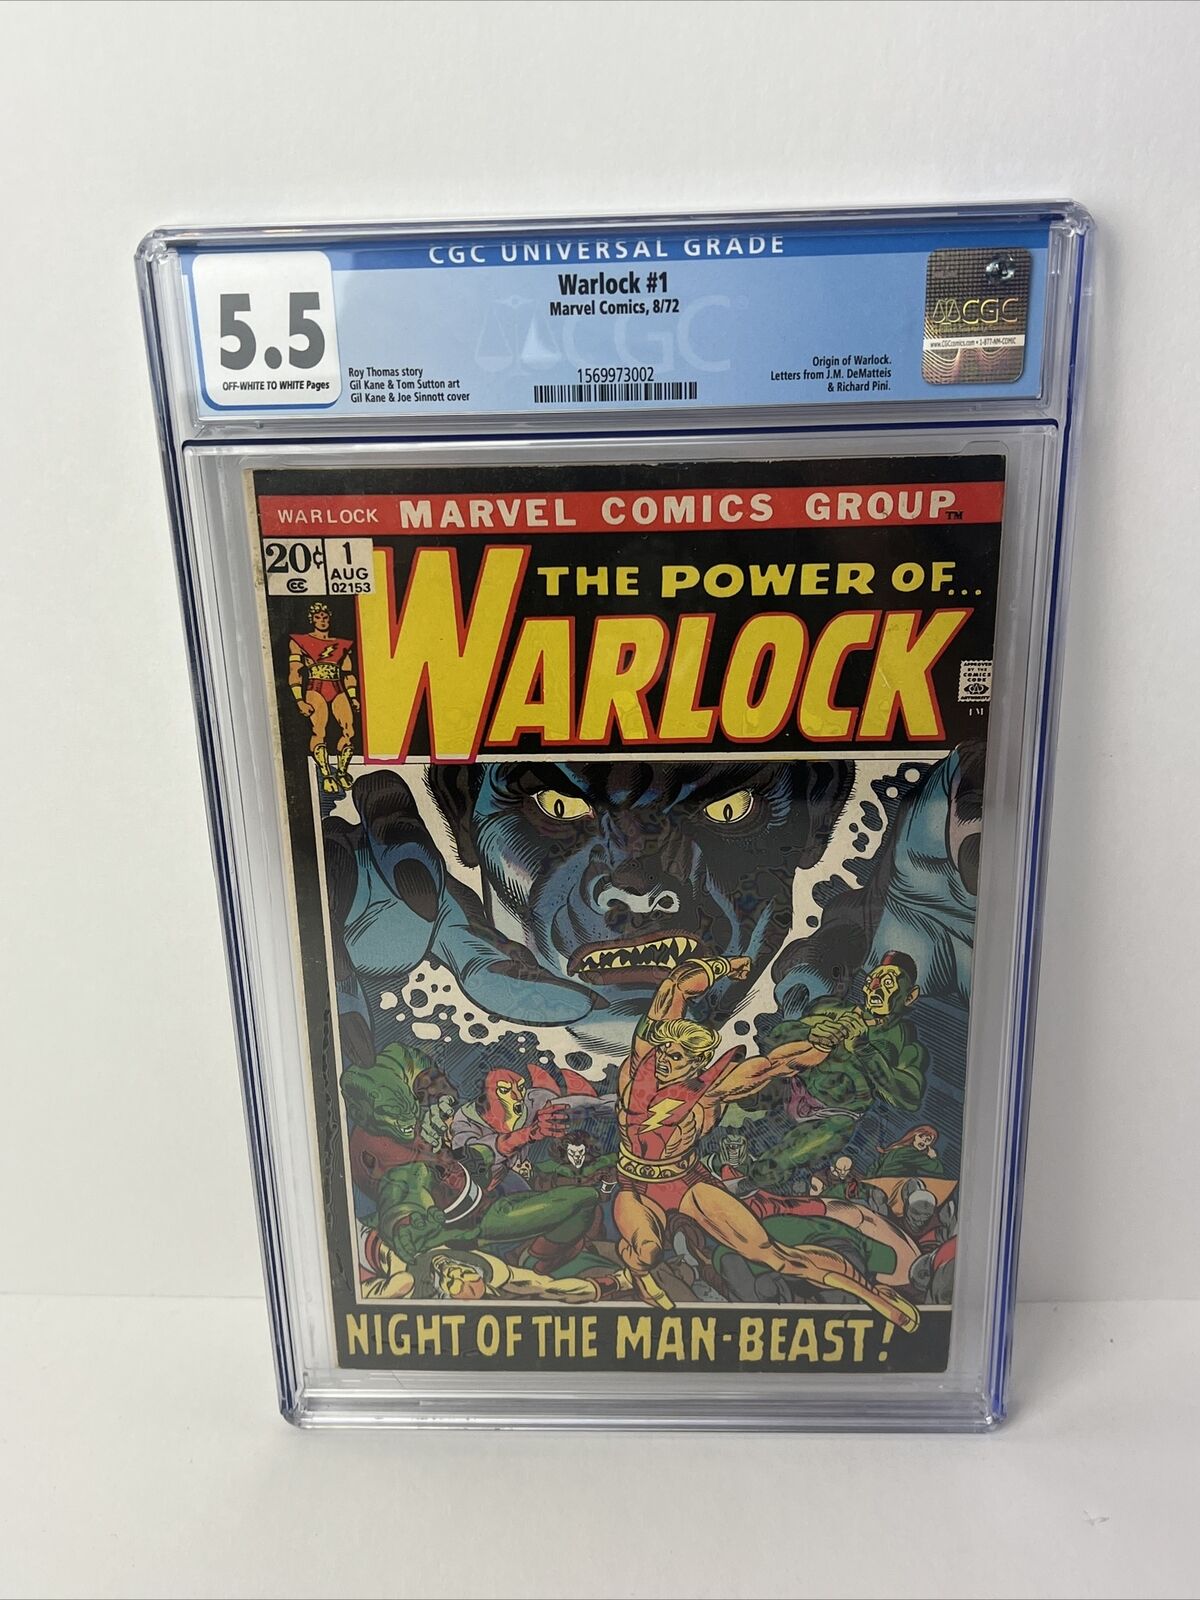 1972 Marvel Comics WARLOCK #1 CGC 5.5 Origin, Letters from J.M. DeMatteis